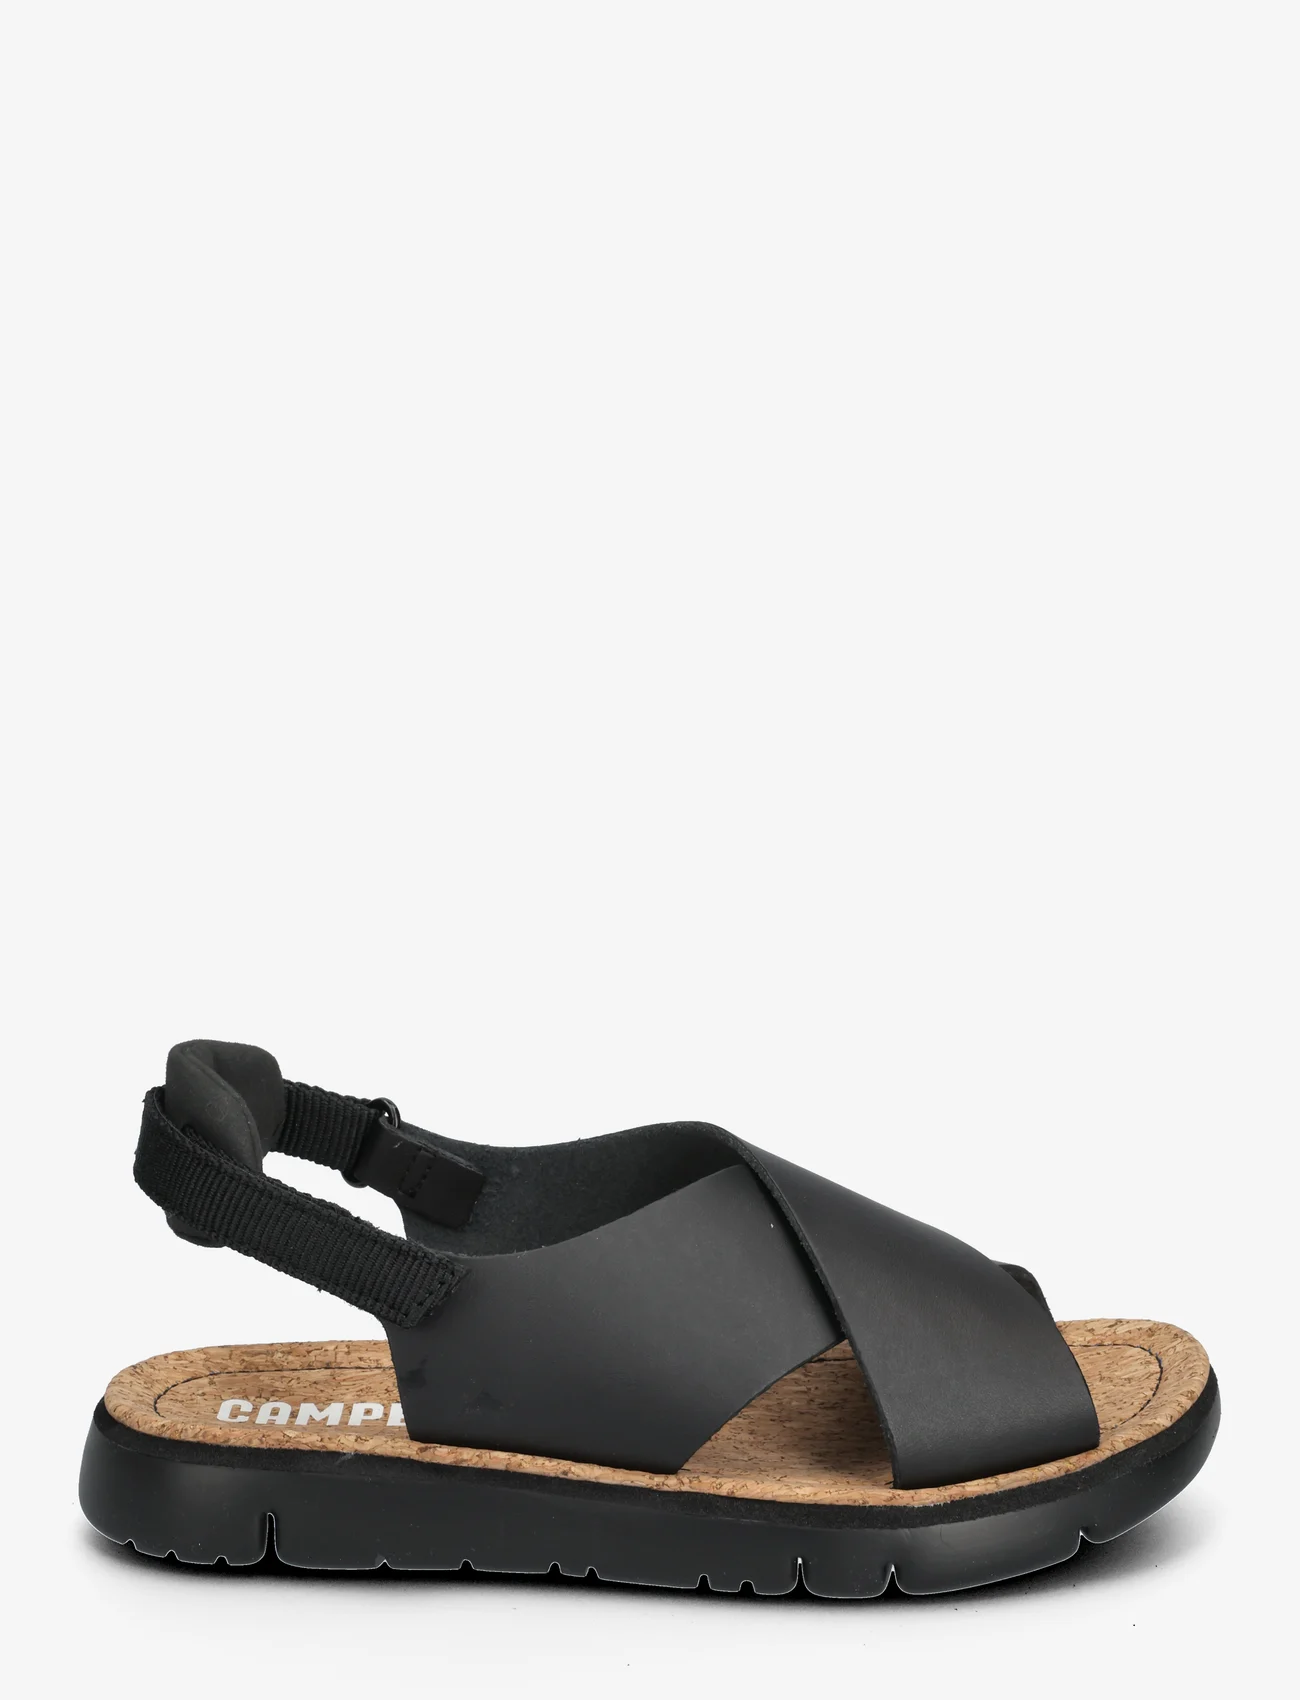 Camper - Oruga Sandal - flade sandaler - black - 1